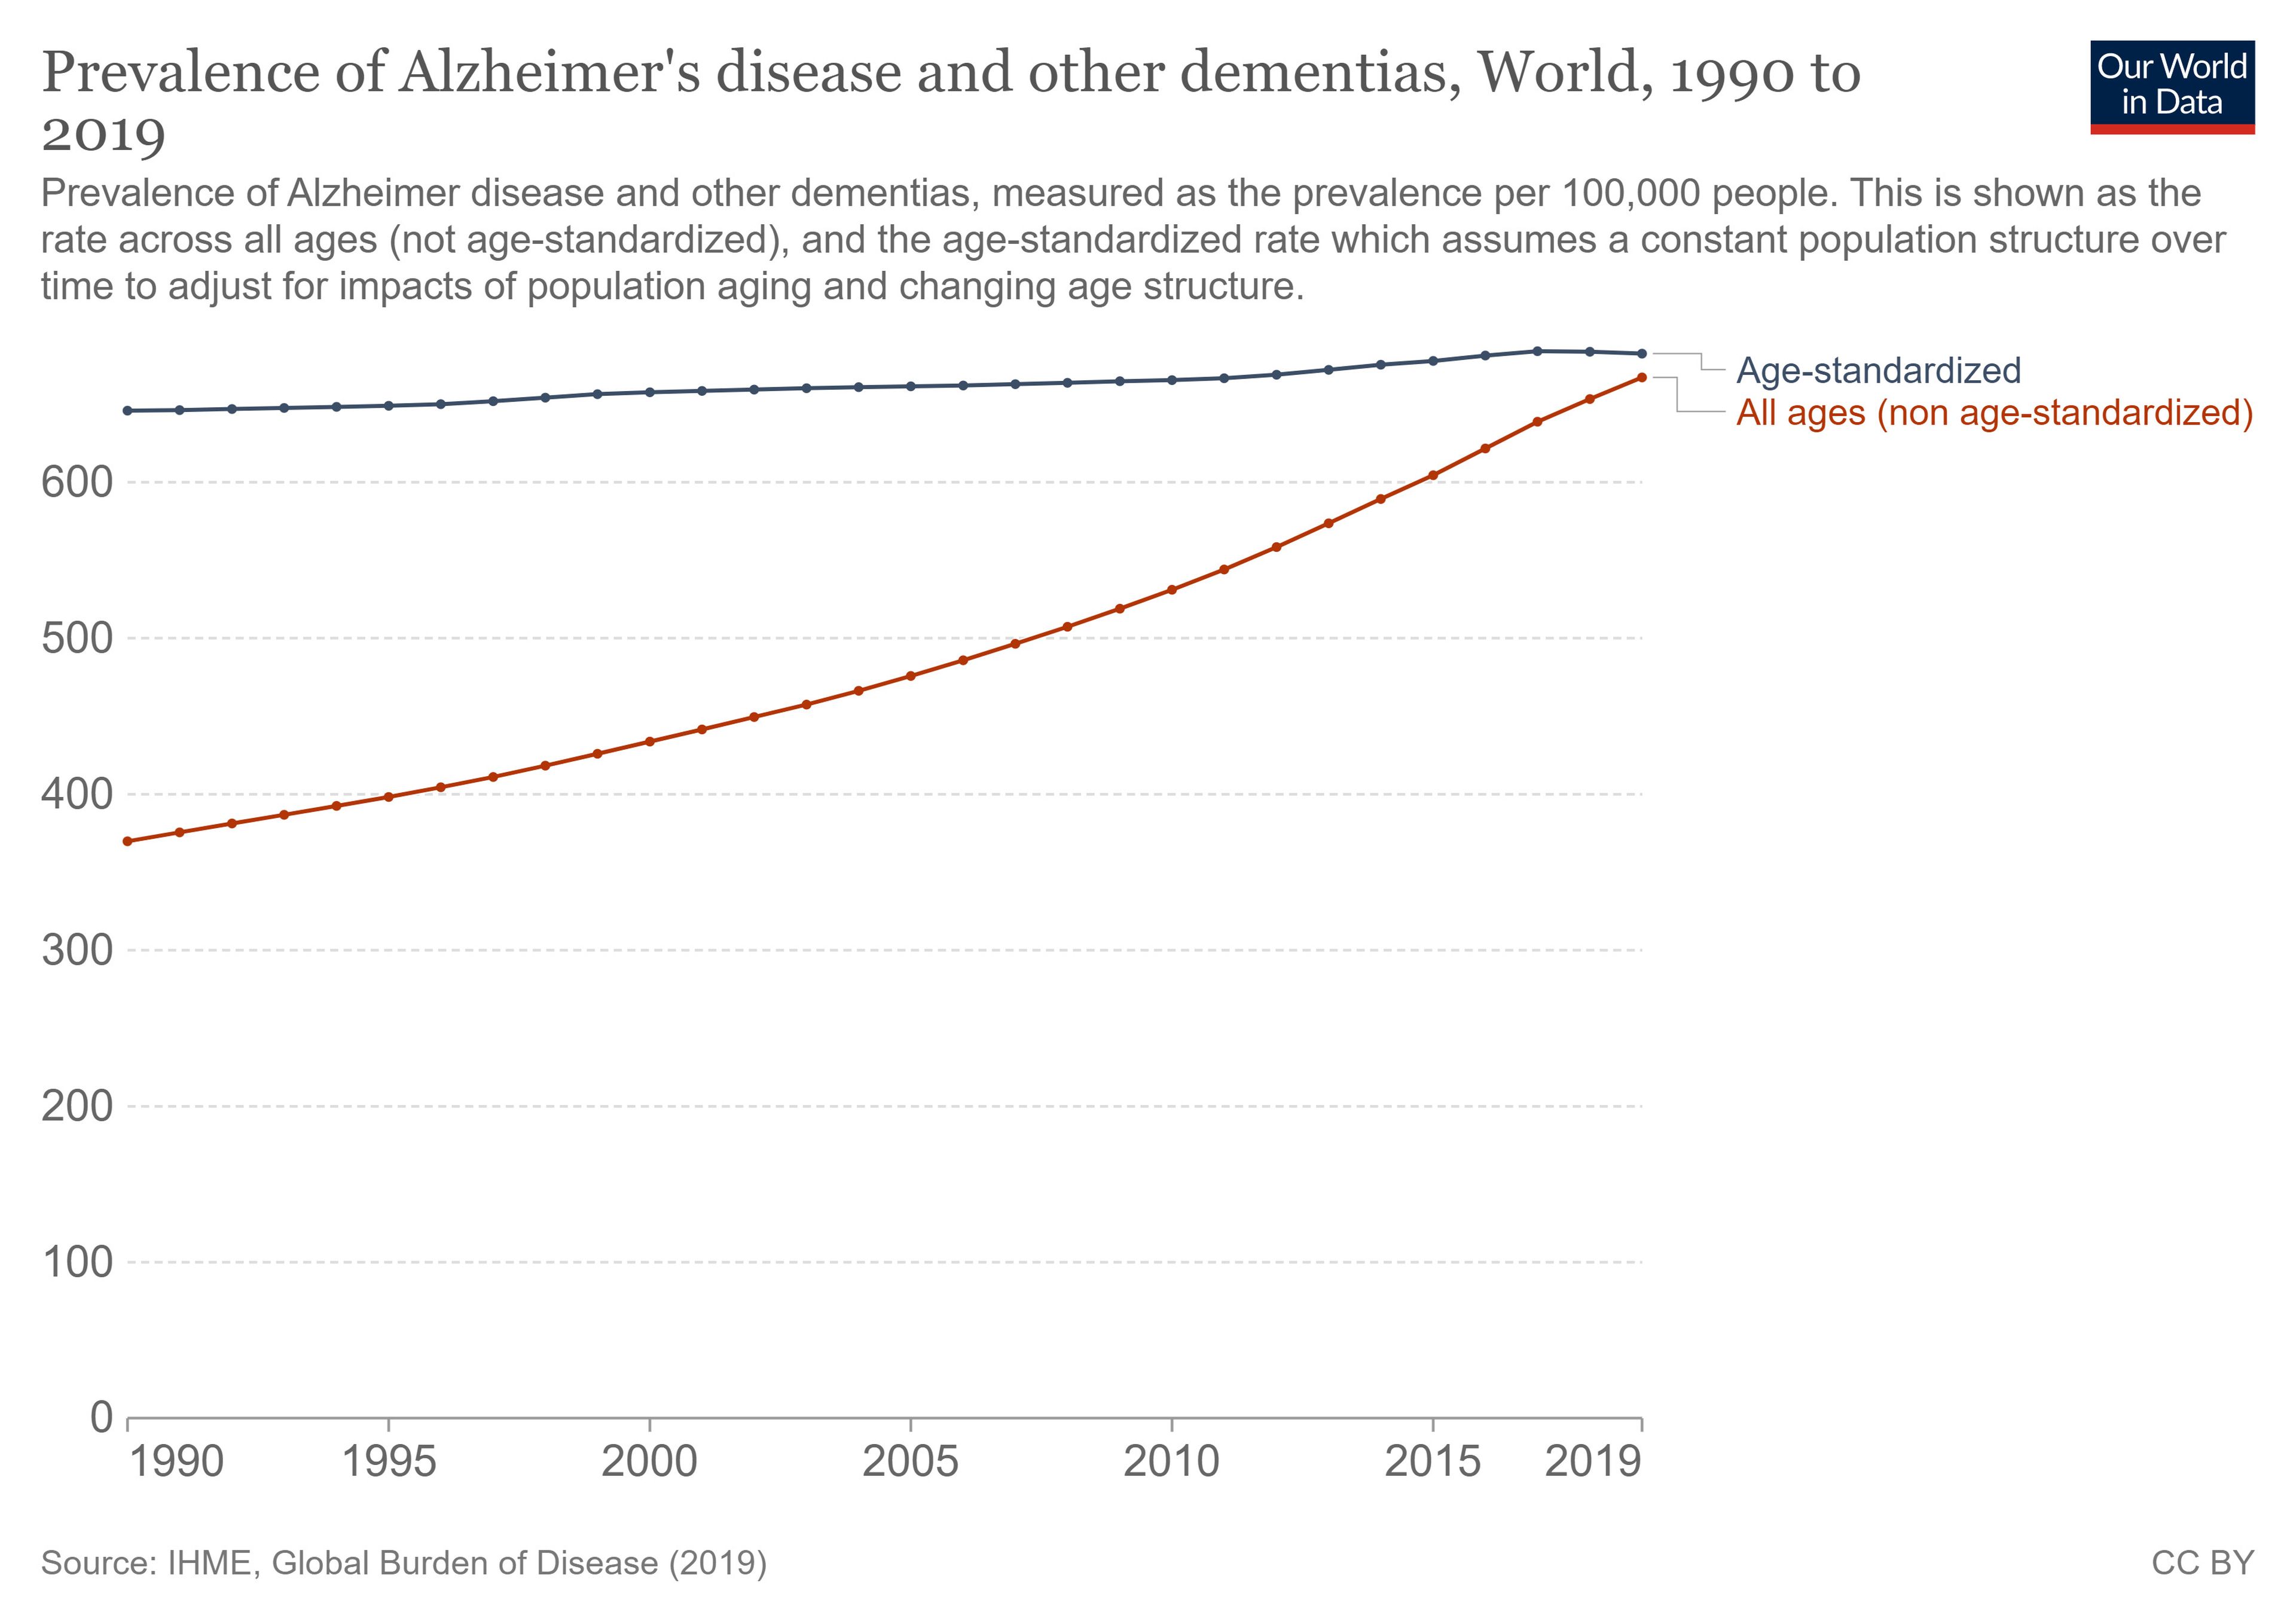 Prevalencia del alzhéimer y otros tipos de demencia por cada 100.000 personas de 1990 a 2019.